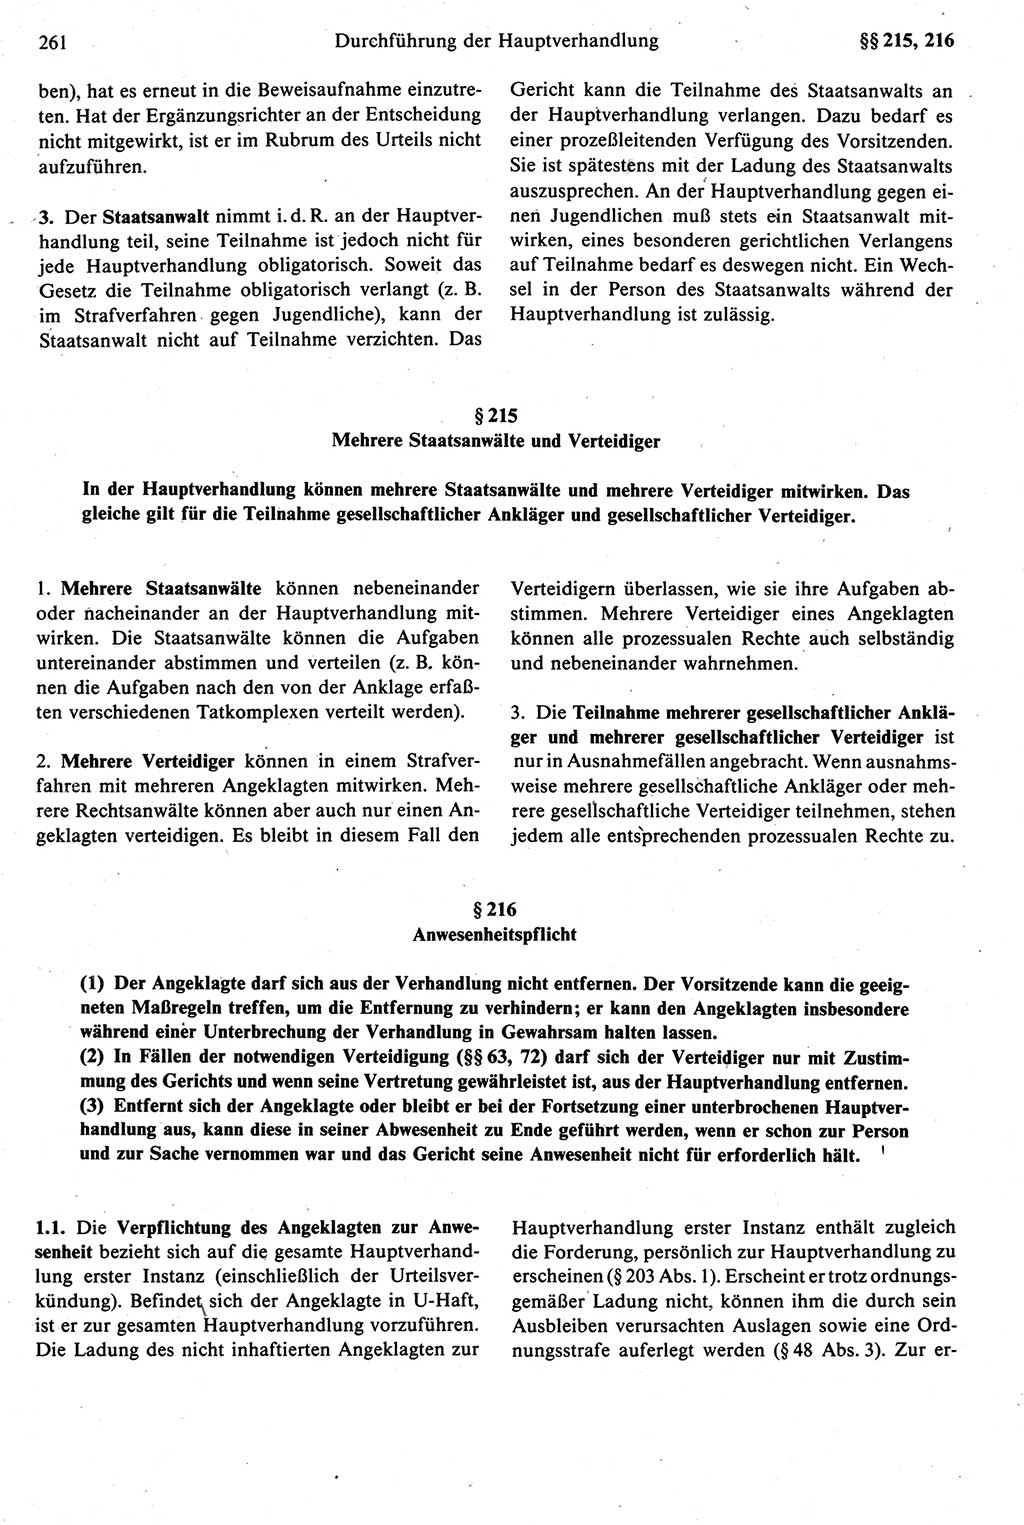 Strafprozeßrecht der DDR [Deutsche Demokratische Republik], Kommentar zur Strafprozeßordnung (StPO) 1987, Seite 261 (Strafprozeßr. DDR Komm. StPO 1987, S. 261)